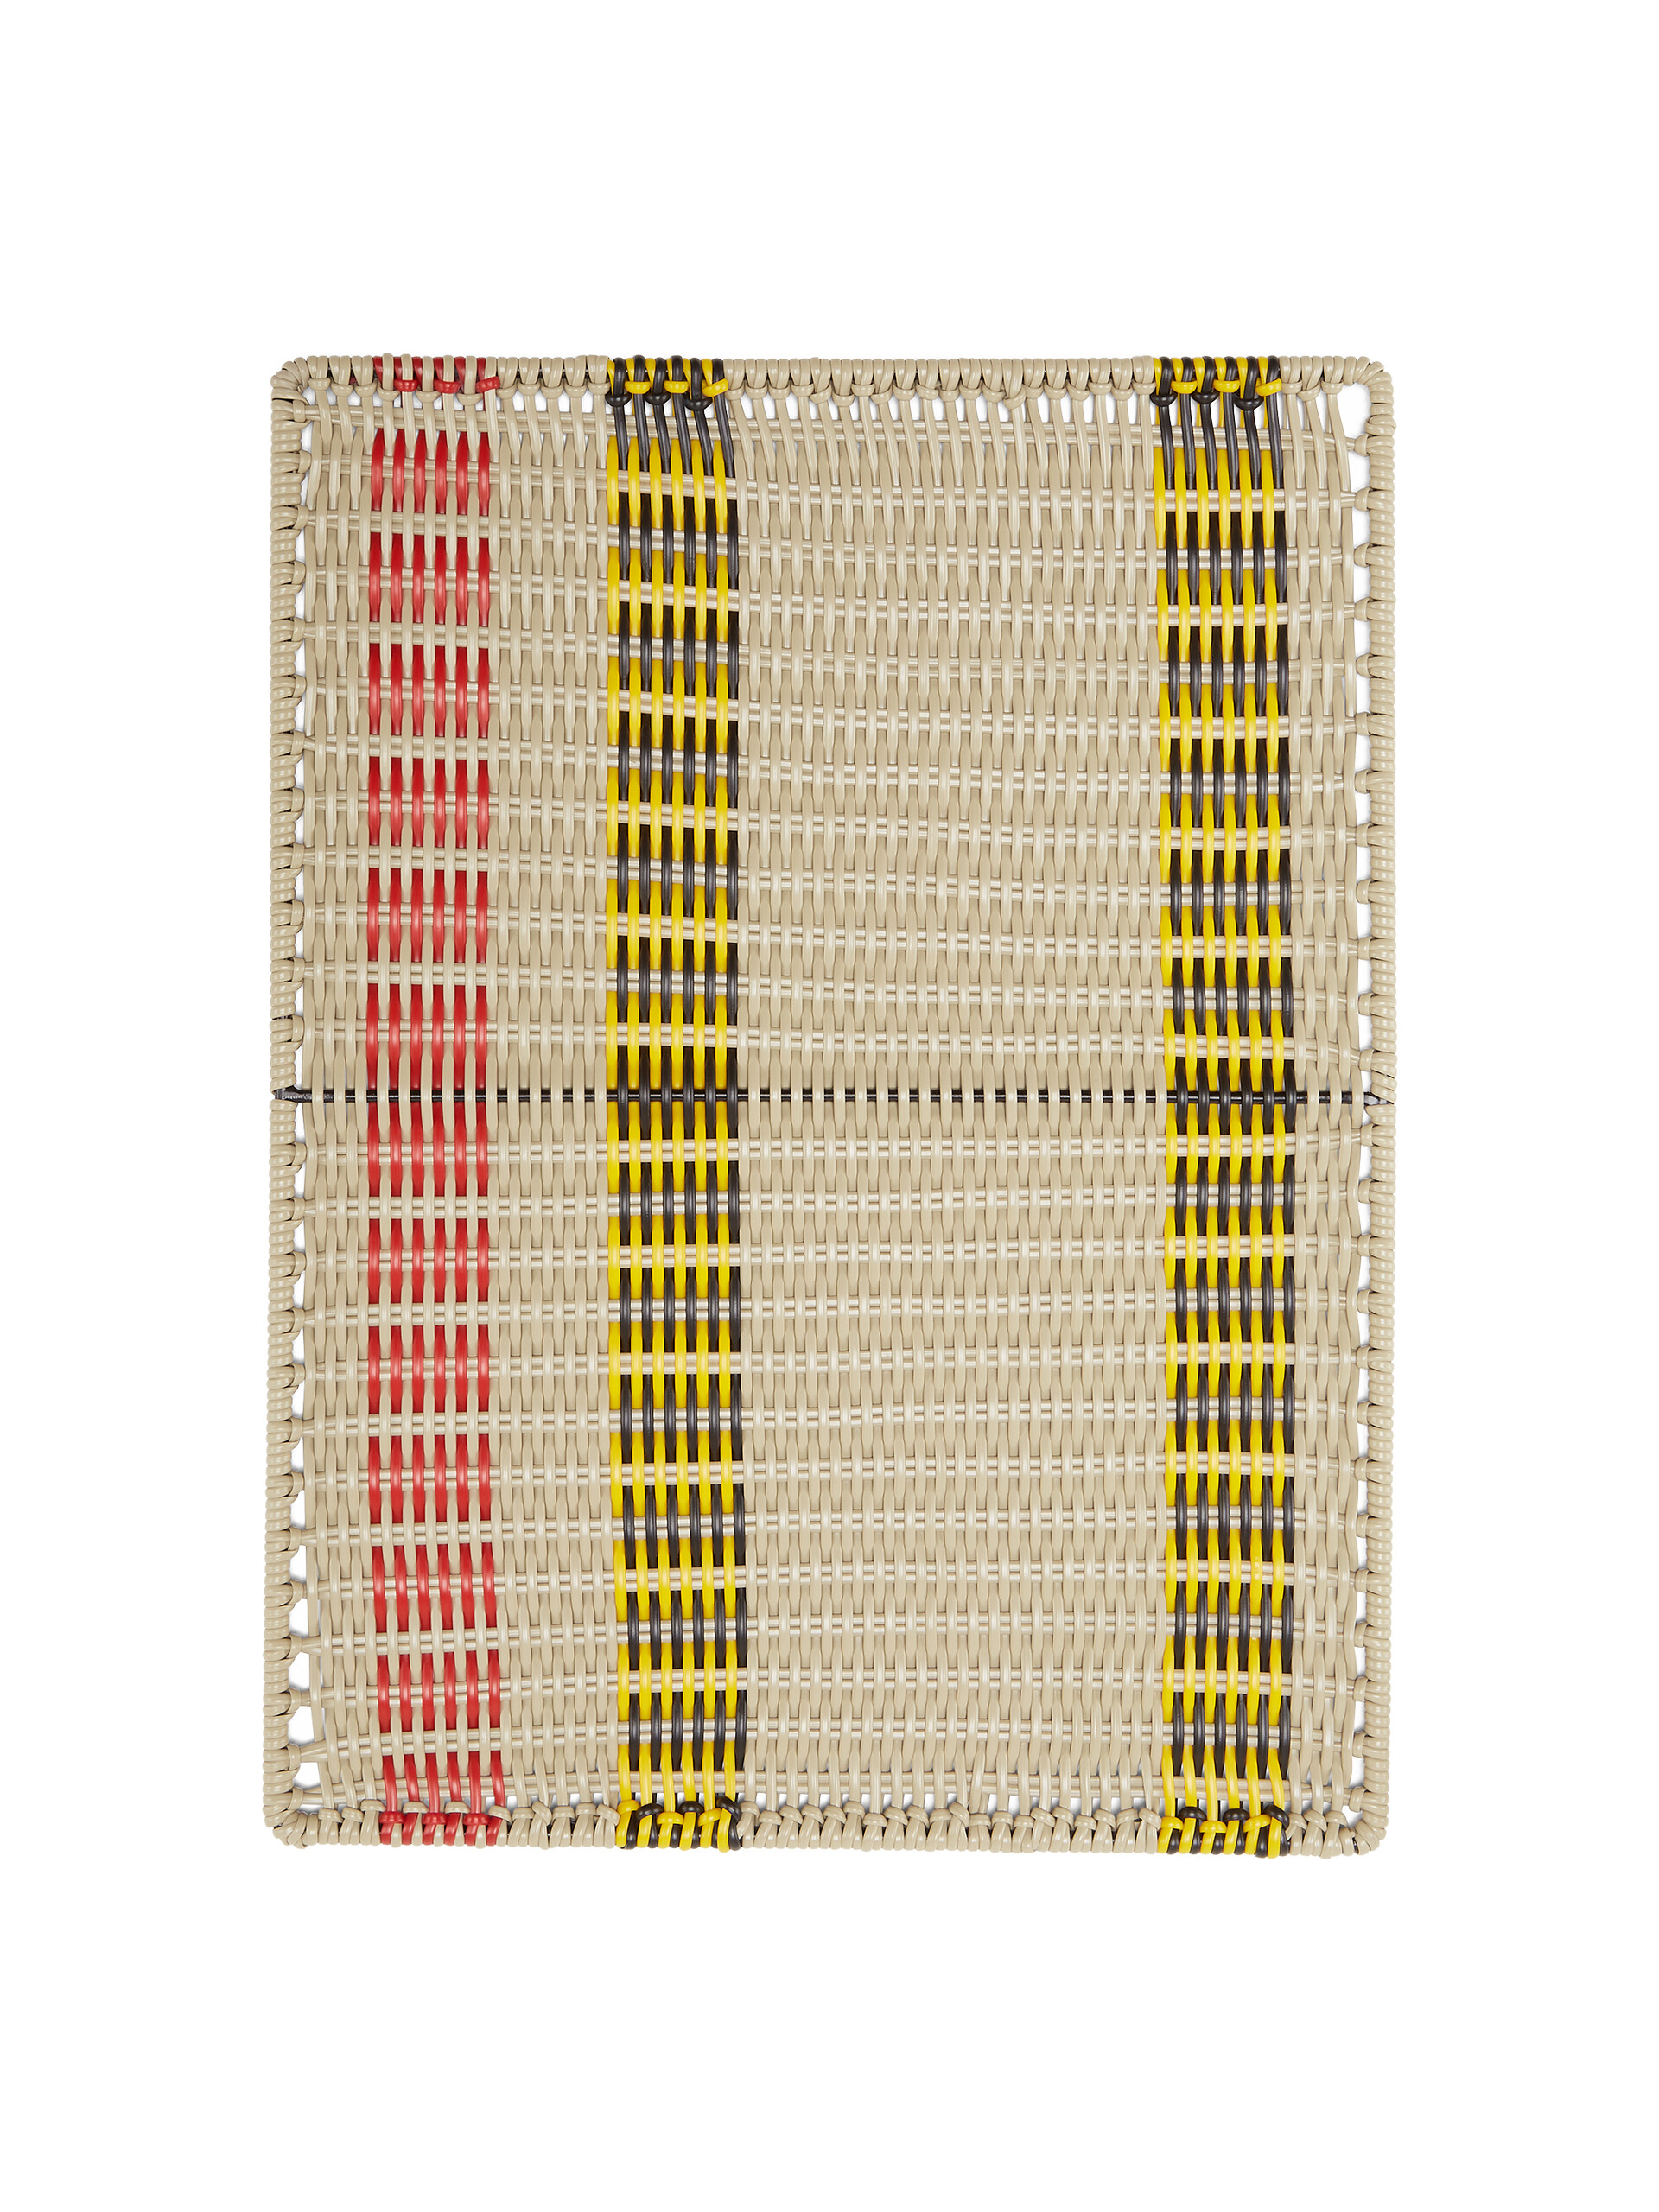 Tovaglietta rettangolare MARNI MARKET in ferro e PVC intrecciato multicolore - Home Accessories - Image 2